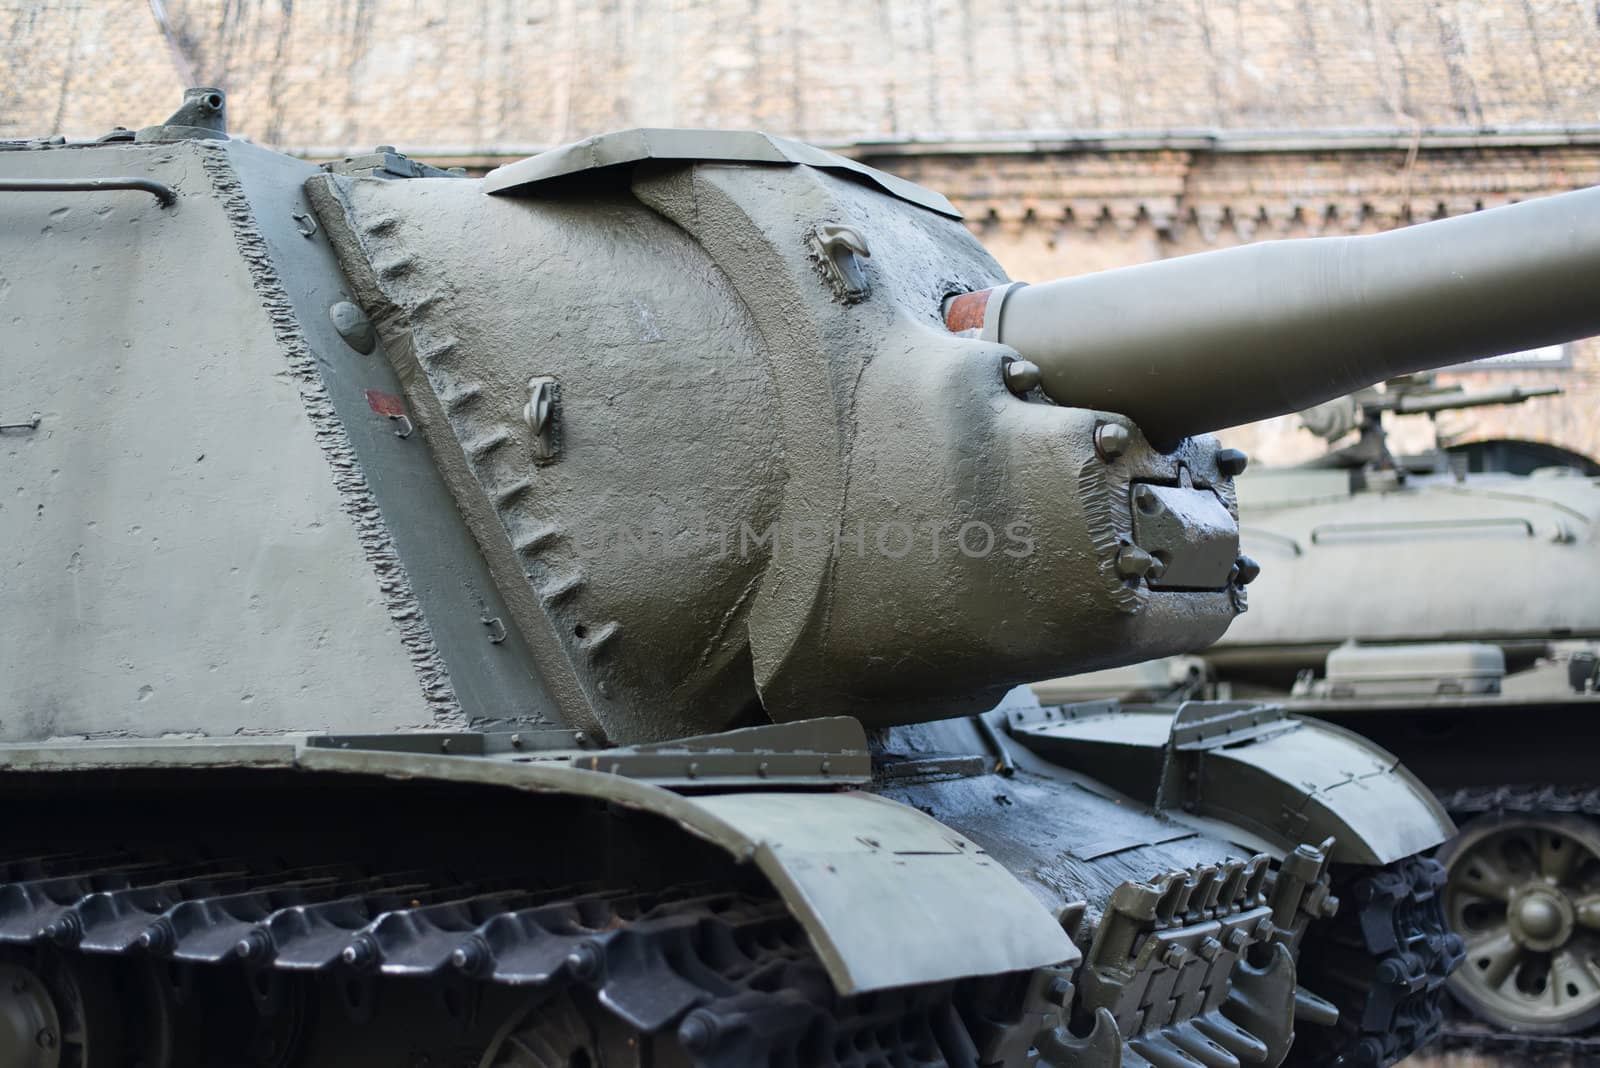 SU-85 tank by furzyk73